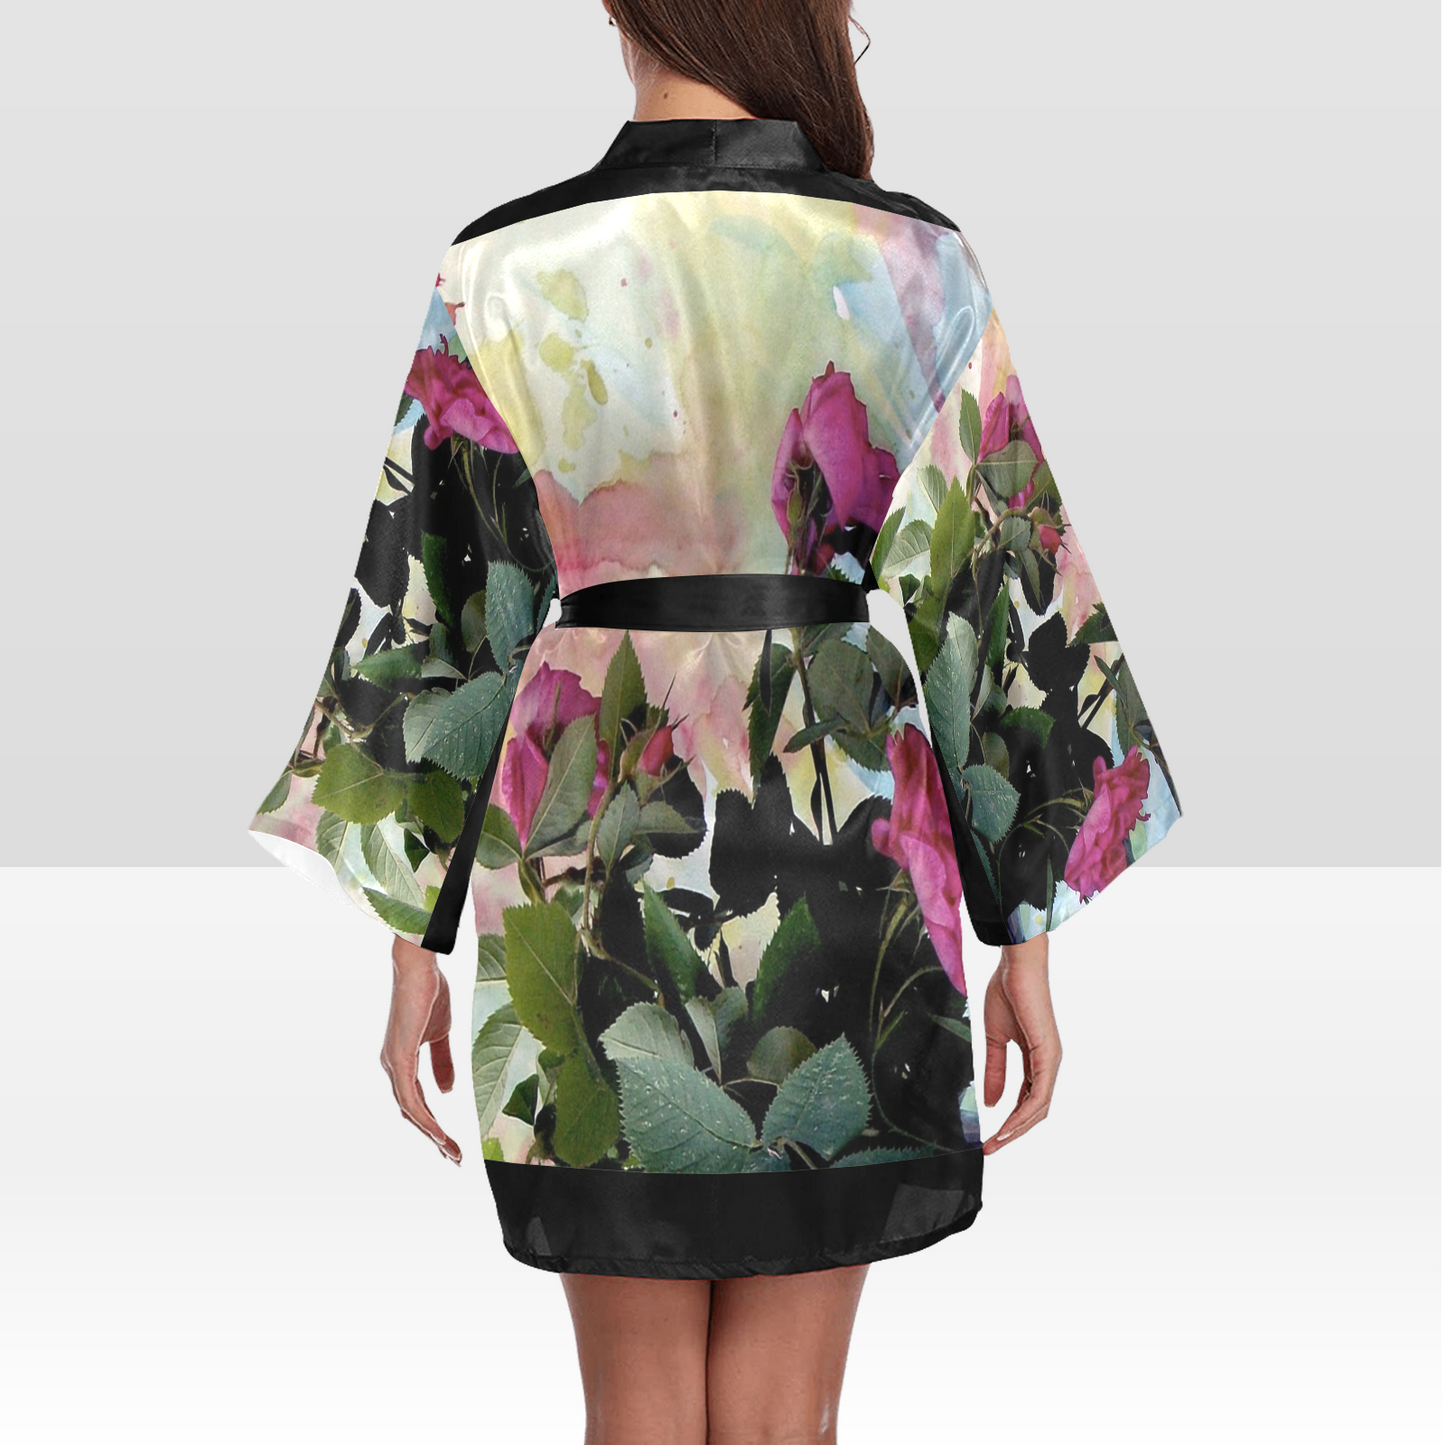 Vintage Floral Kimono Robe, Black or White Trim, Sizes XS to 2XL, Design 21